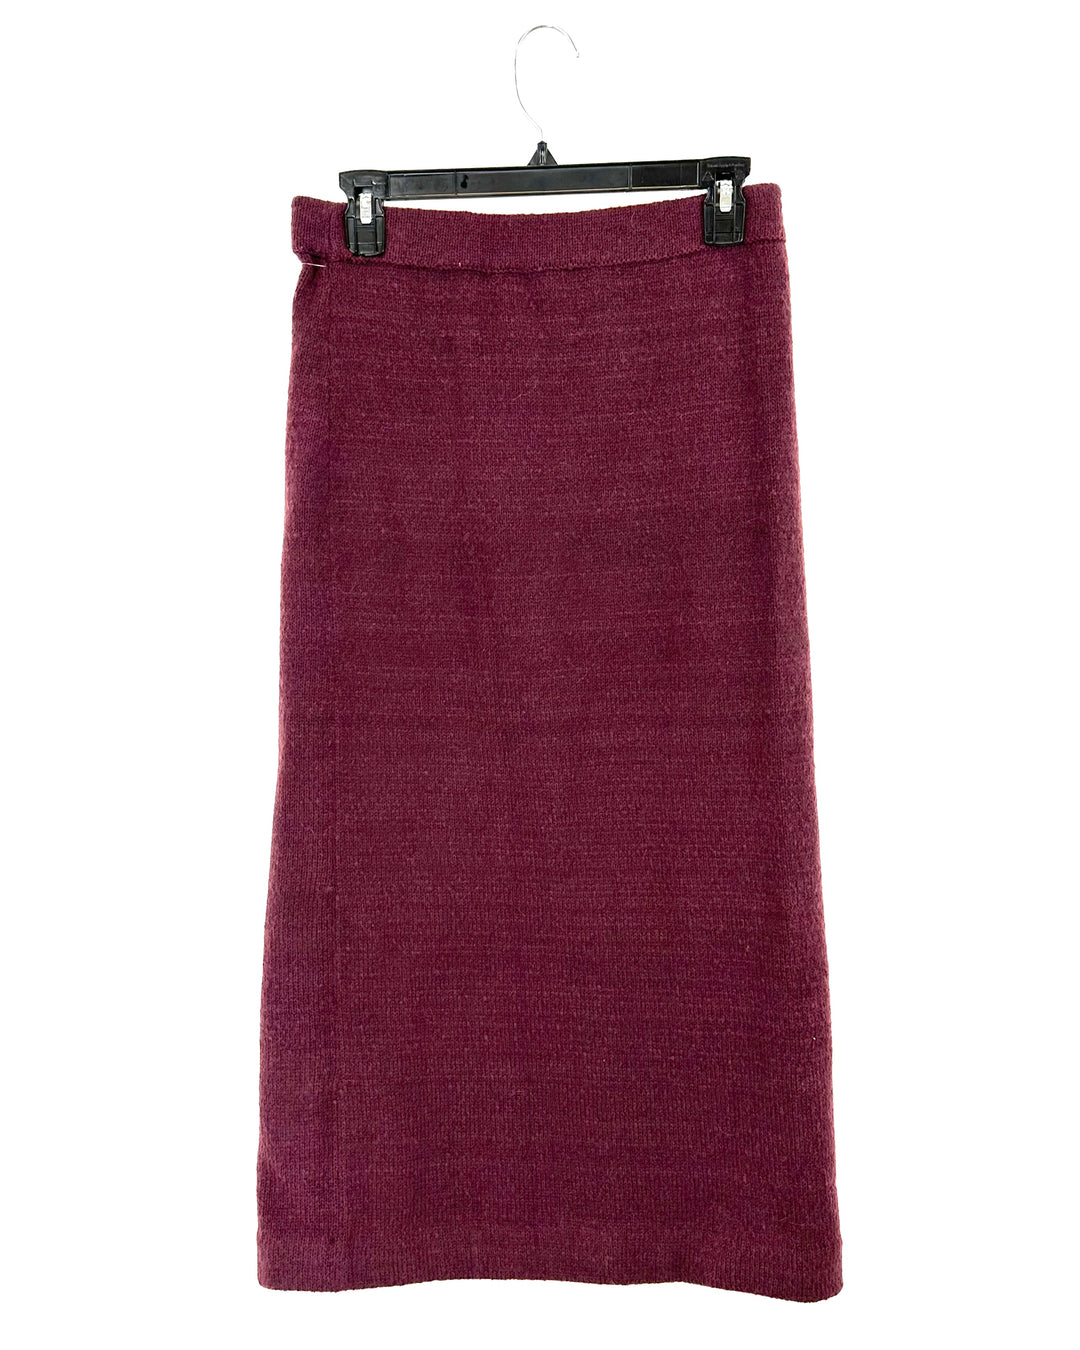 Maroon Skirt - Size 4-6